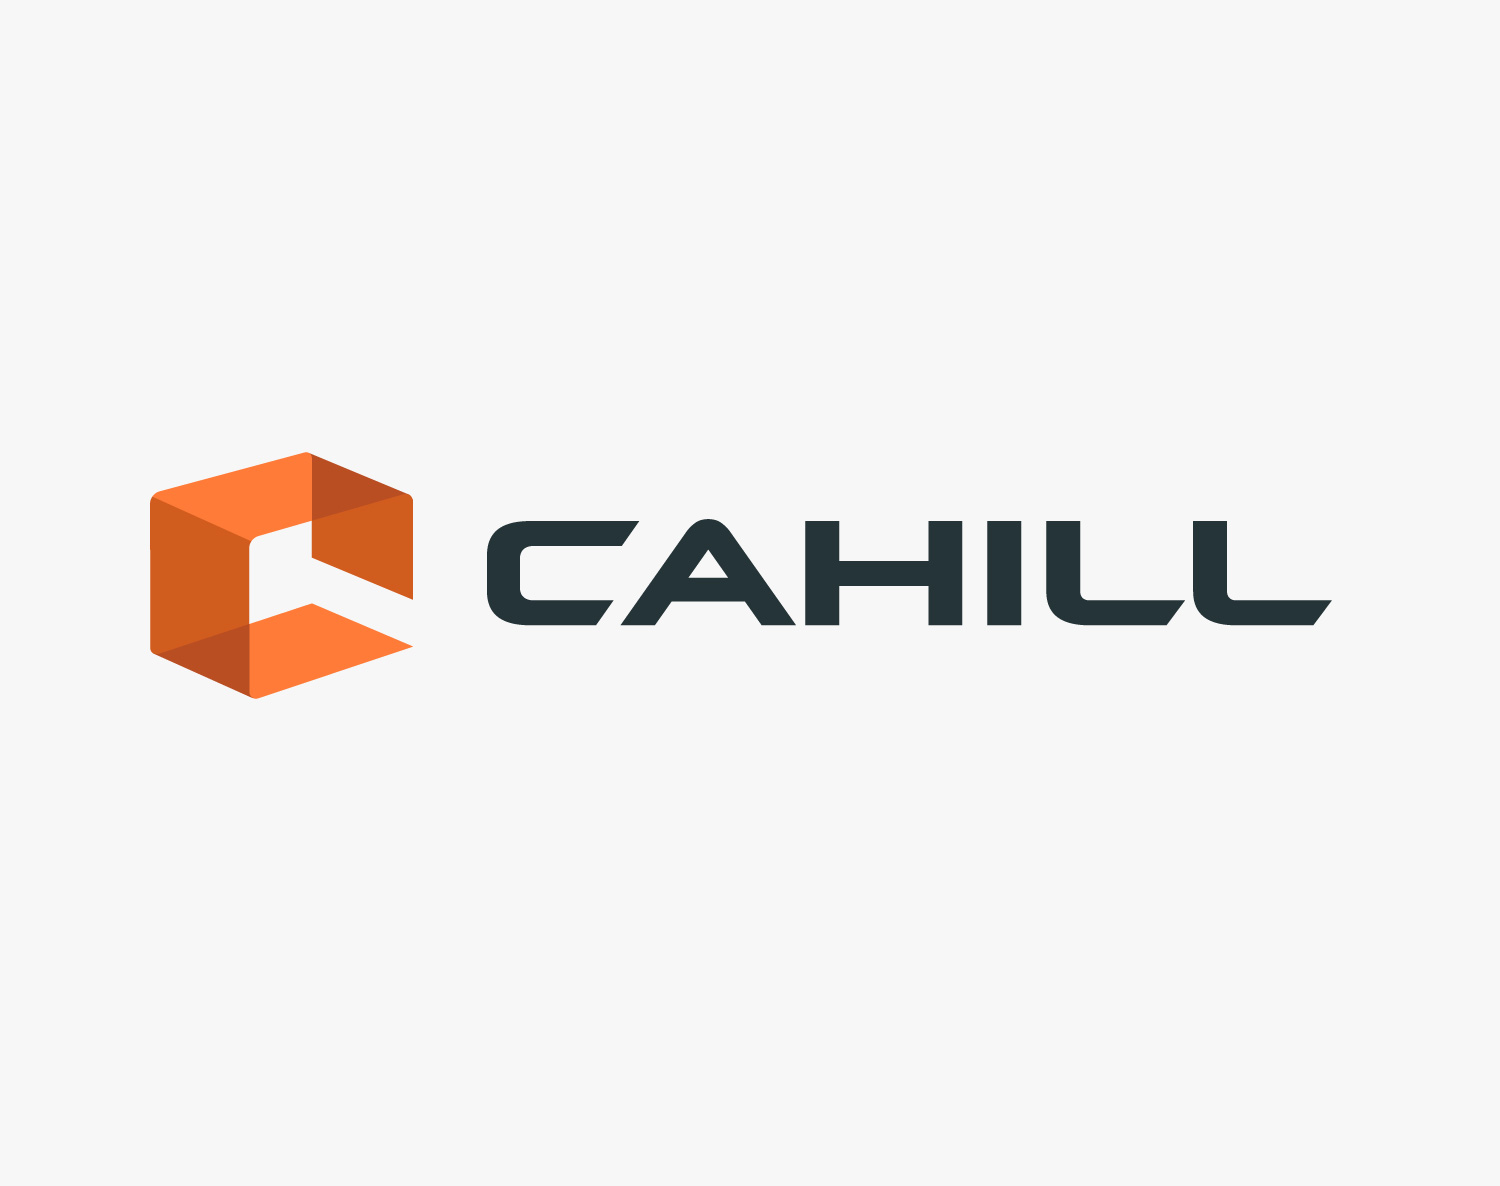 Cahill Logo